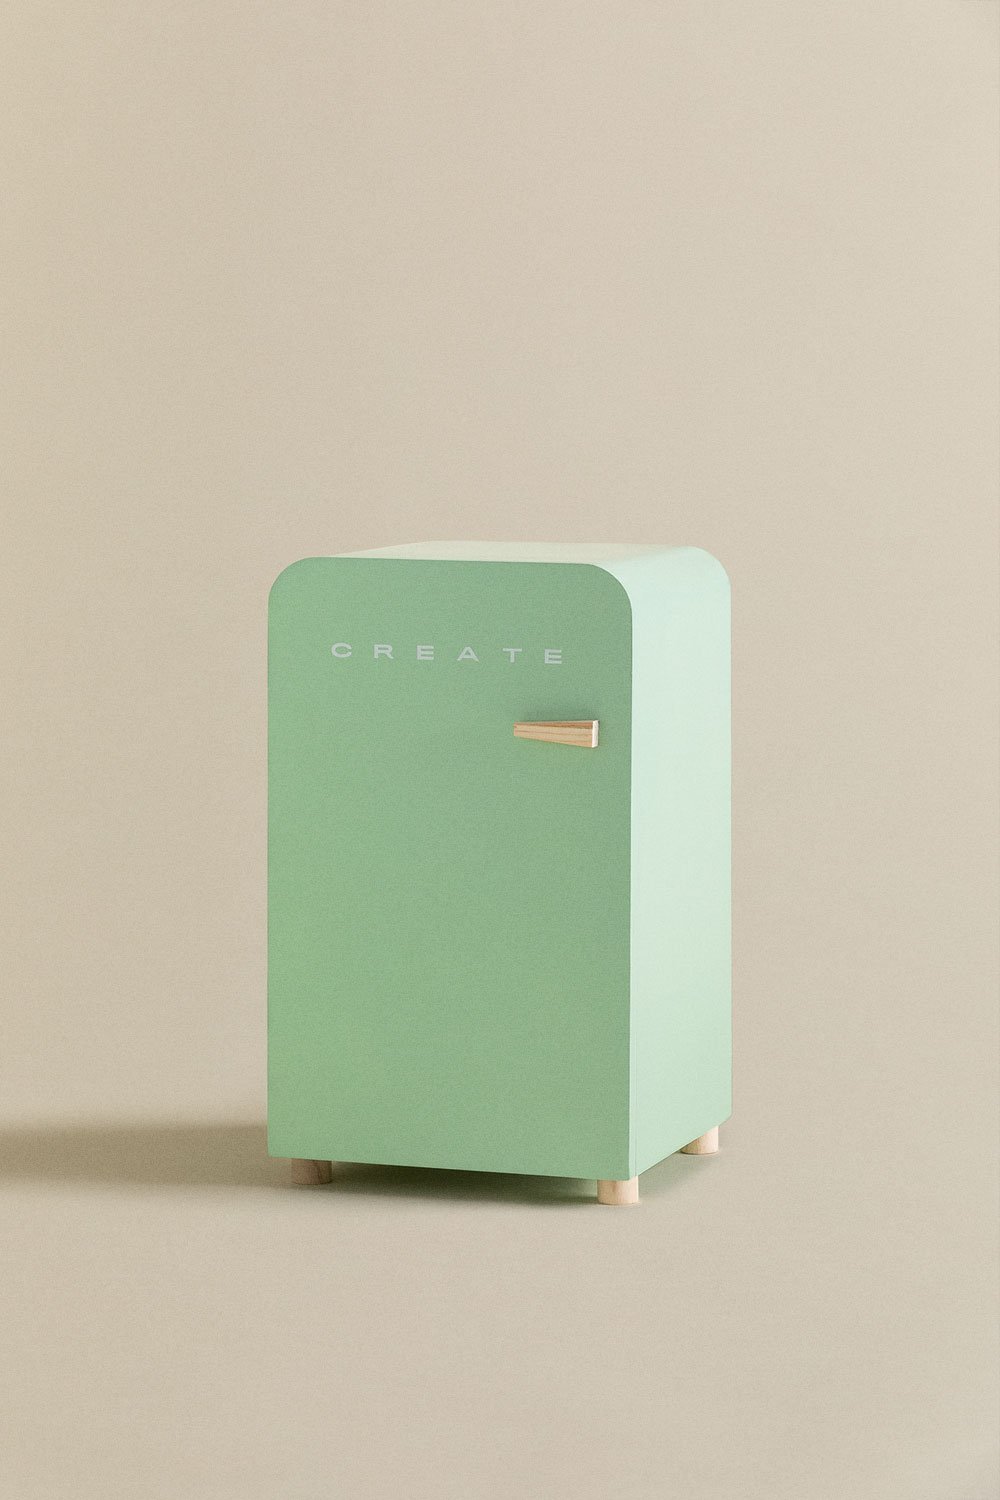 Petits réfrigérateurs  Mini réfrigérateurs - Create